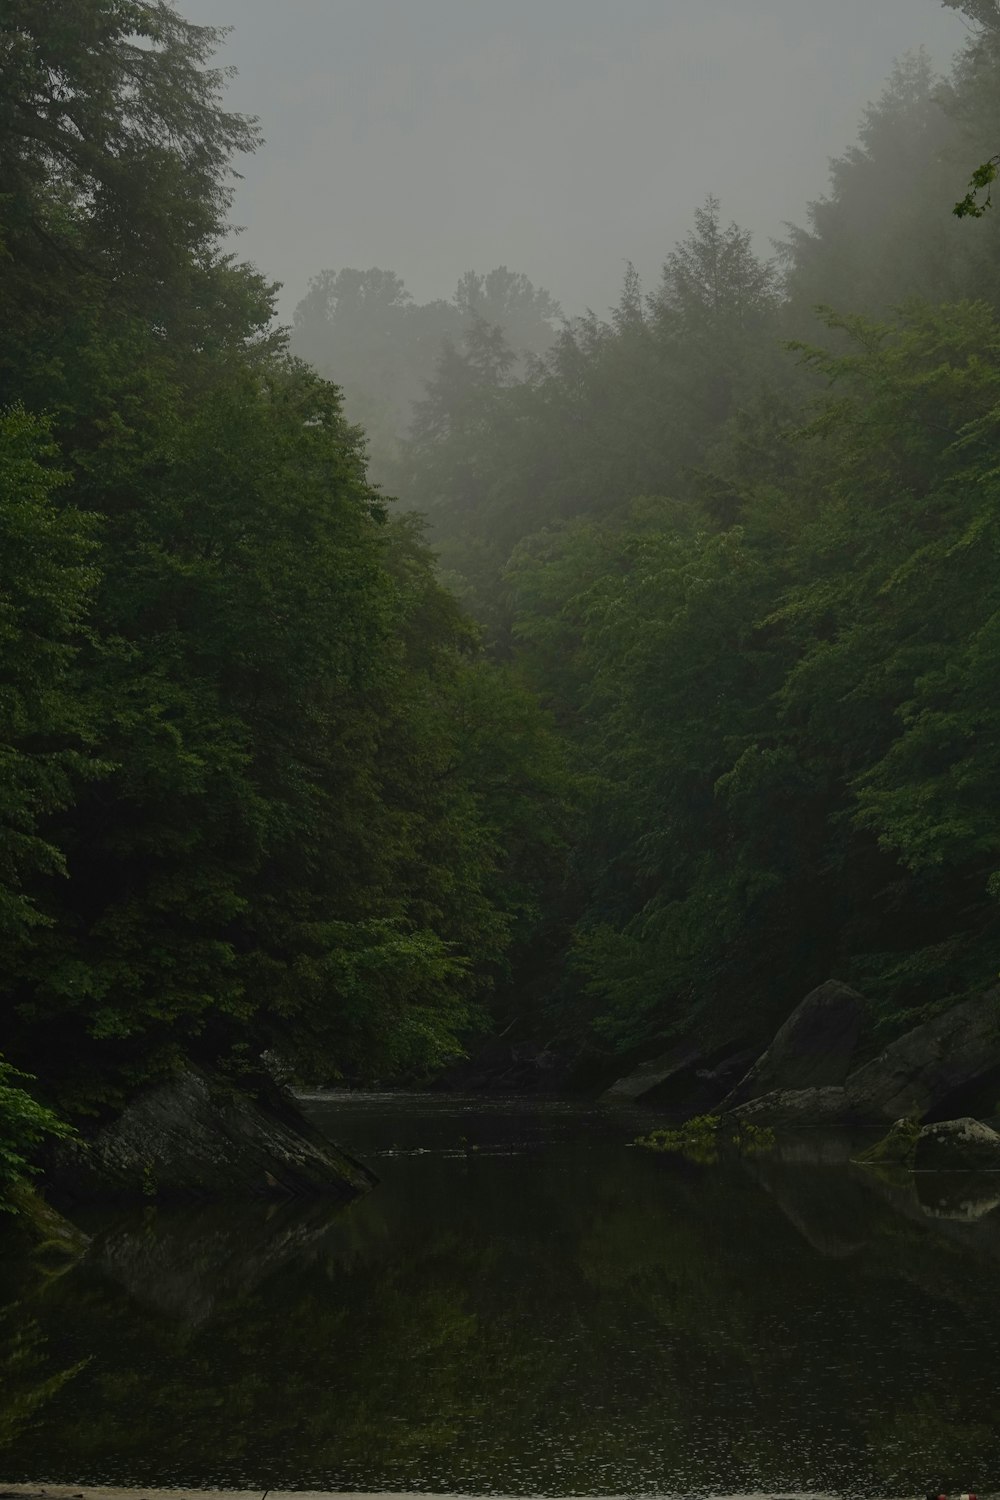 un cuerpo de agua rodeado de árboles y niebla